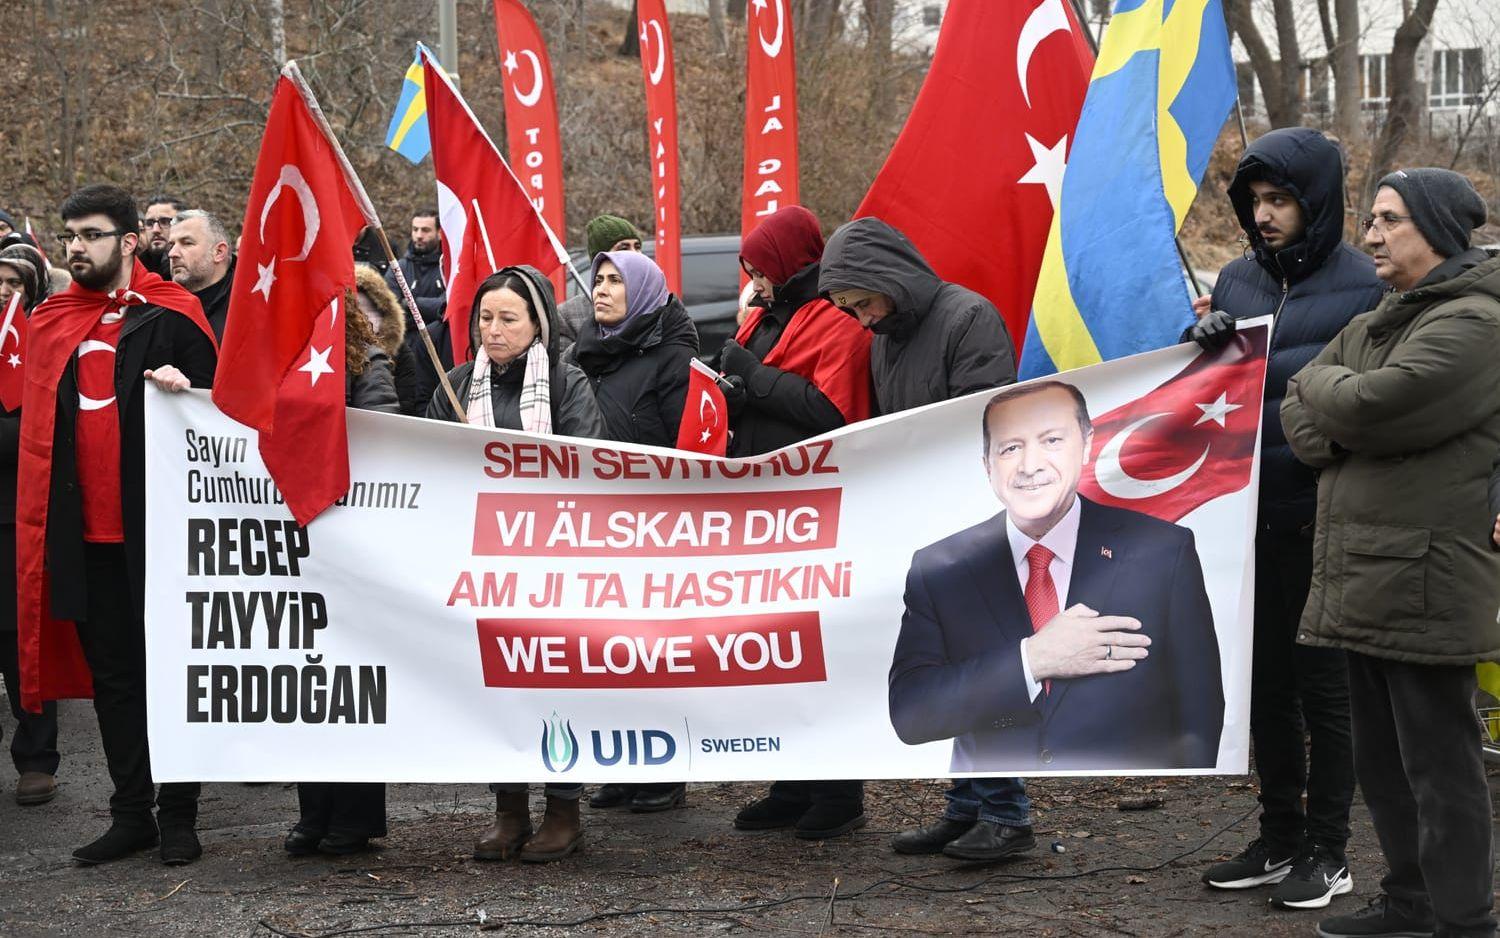 Den pro-turkiska organisationen Union of European Turkish Democrats (UETD) demonstrerar till stöd för Turkiet och president Recep Tayyip Erdogan utanför Turkiets ambassad.